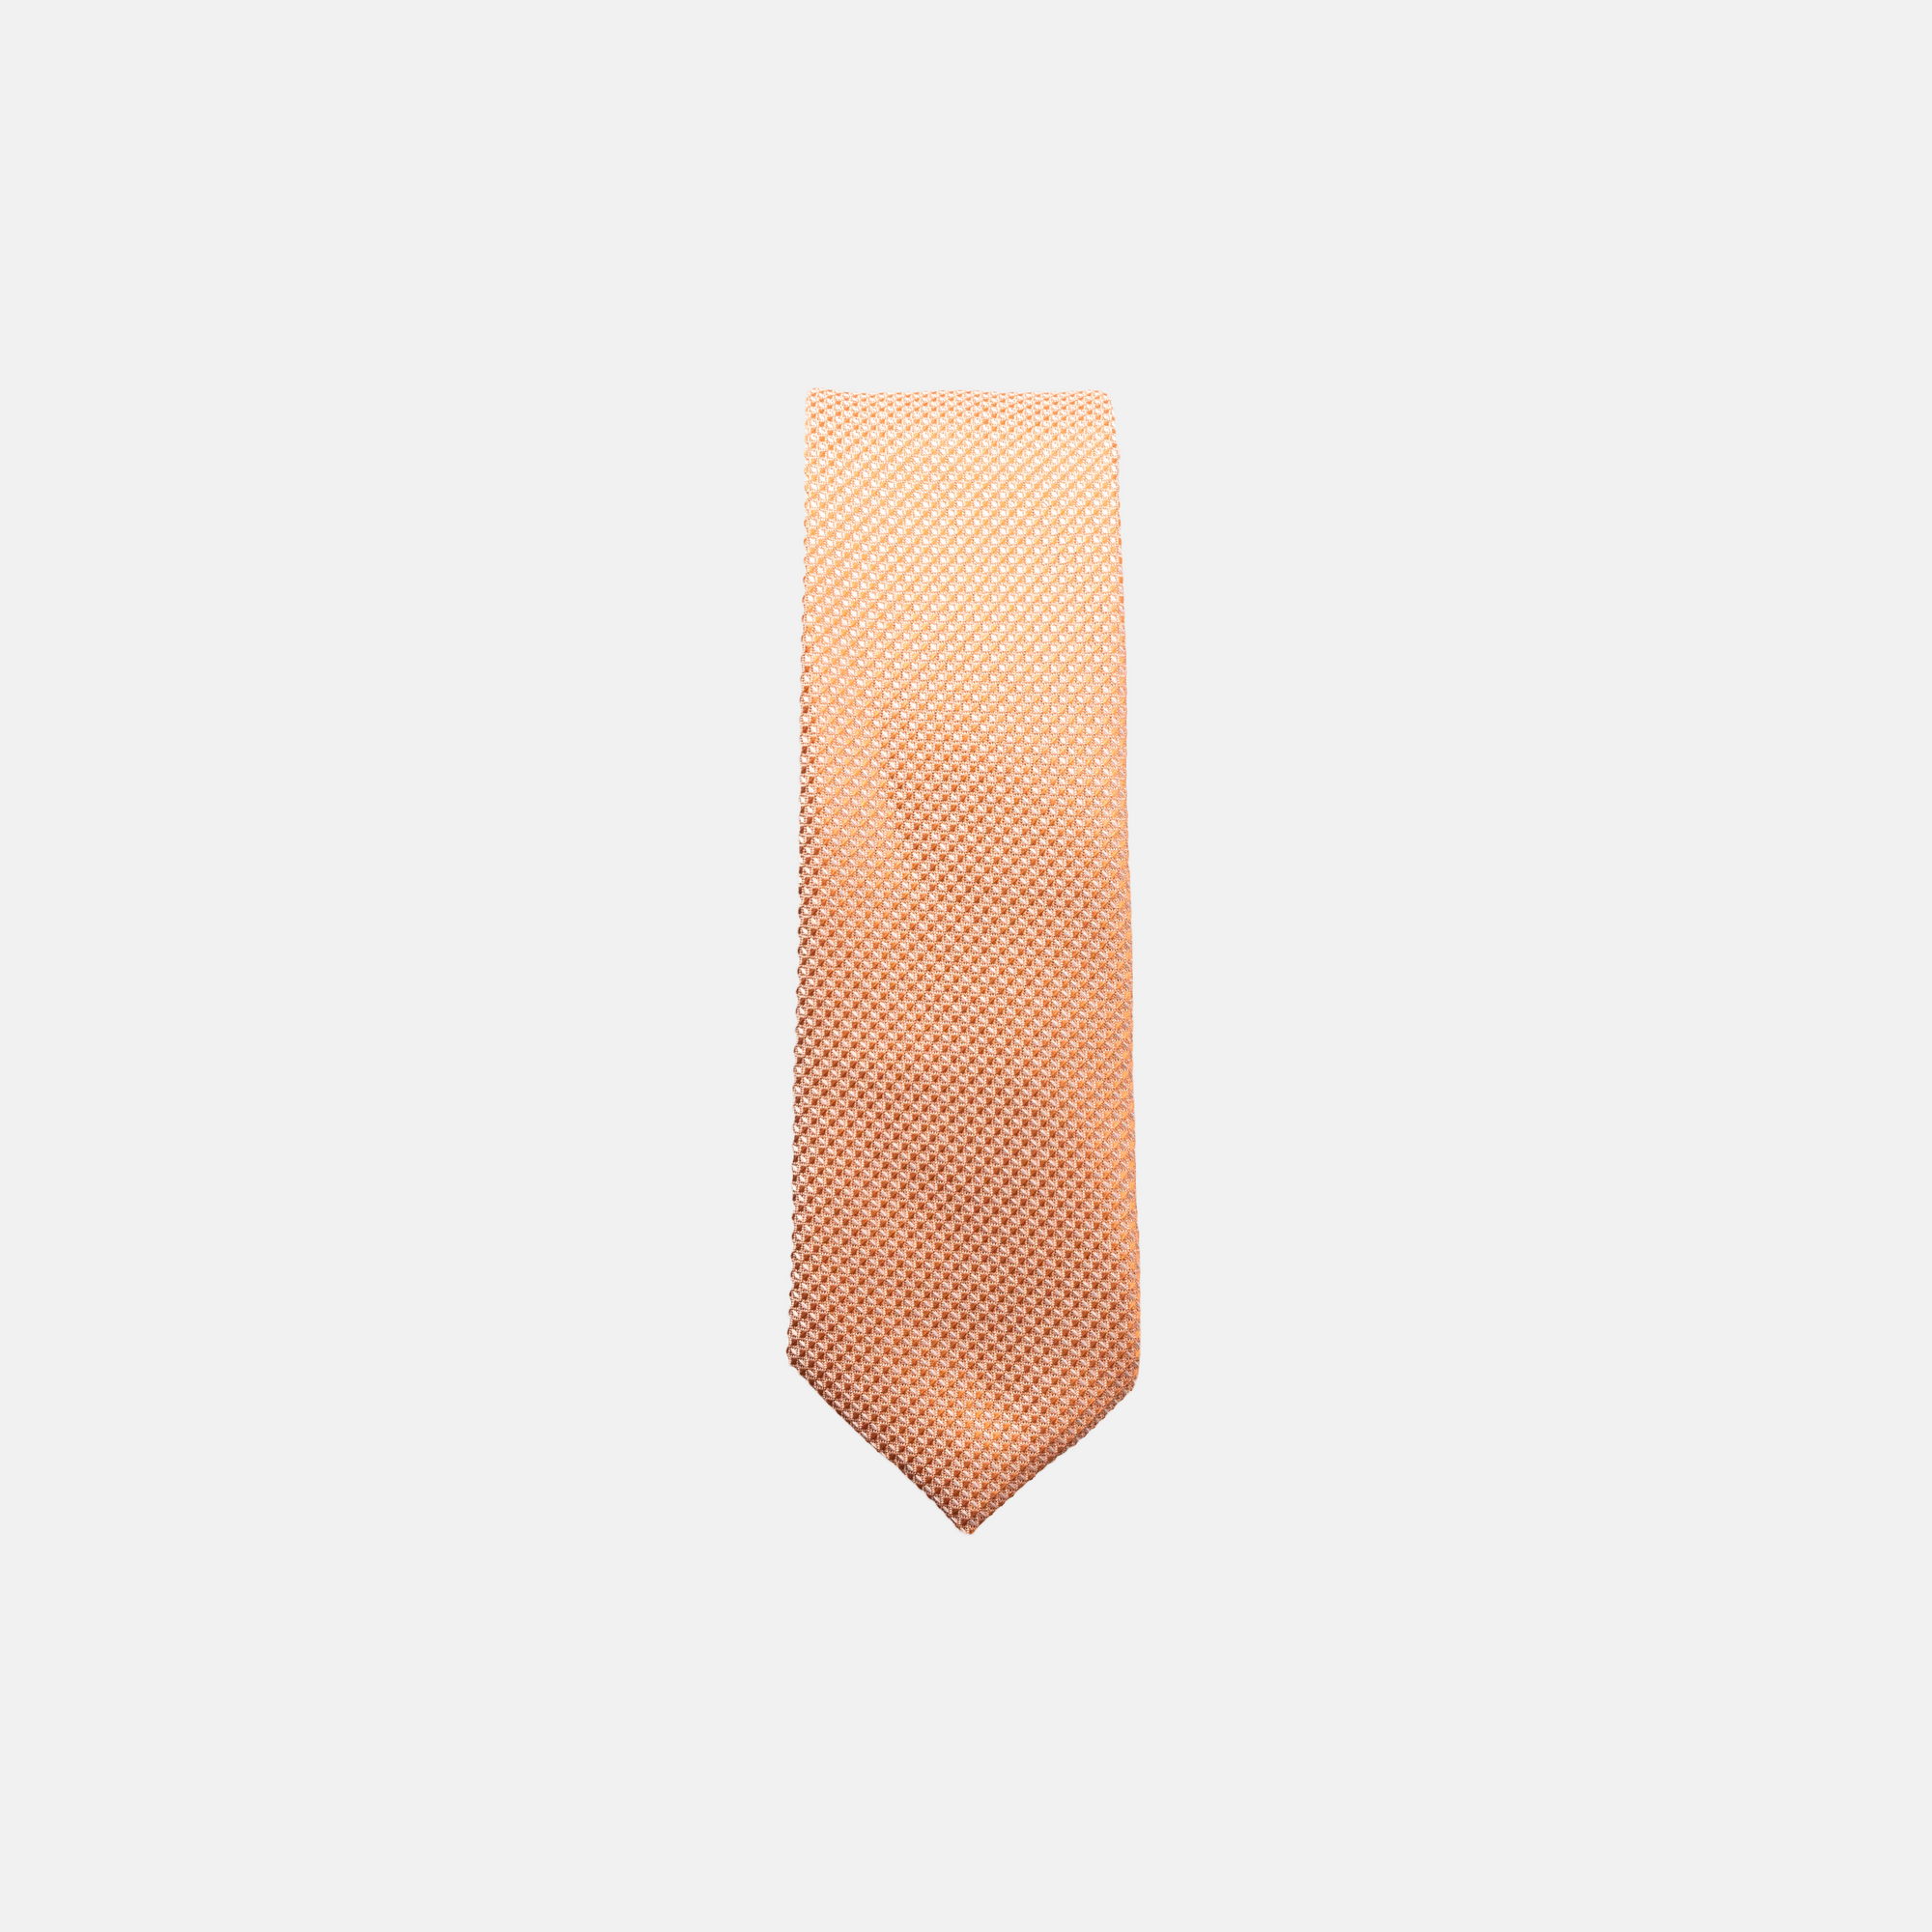 LEVI || BOY - Boy's Tie